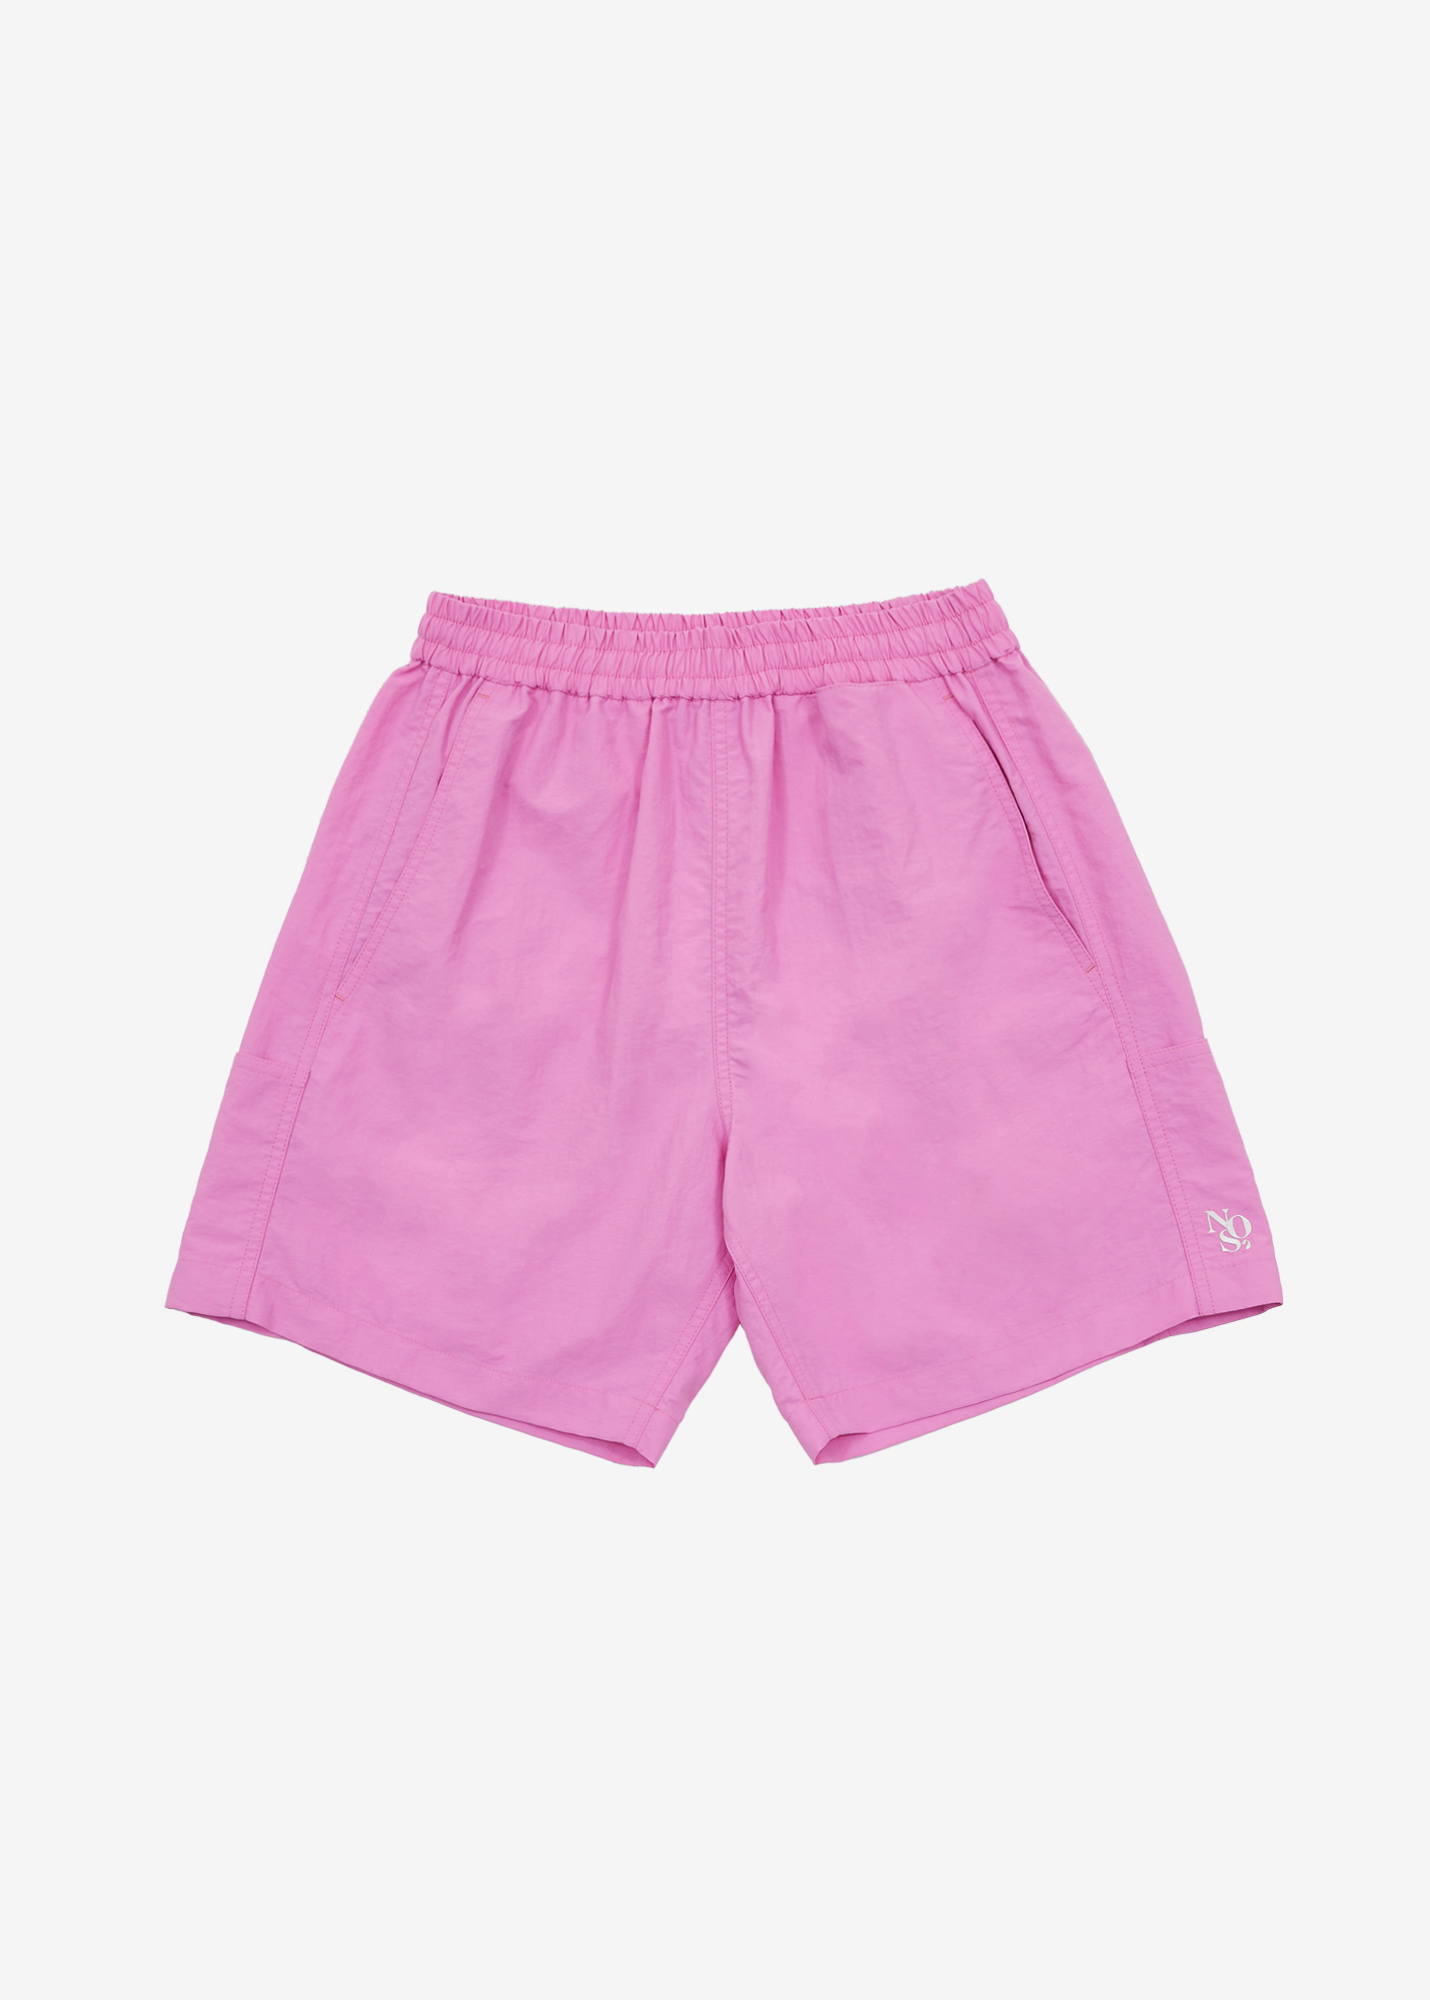 Pocket shorts pants - Pink